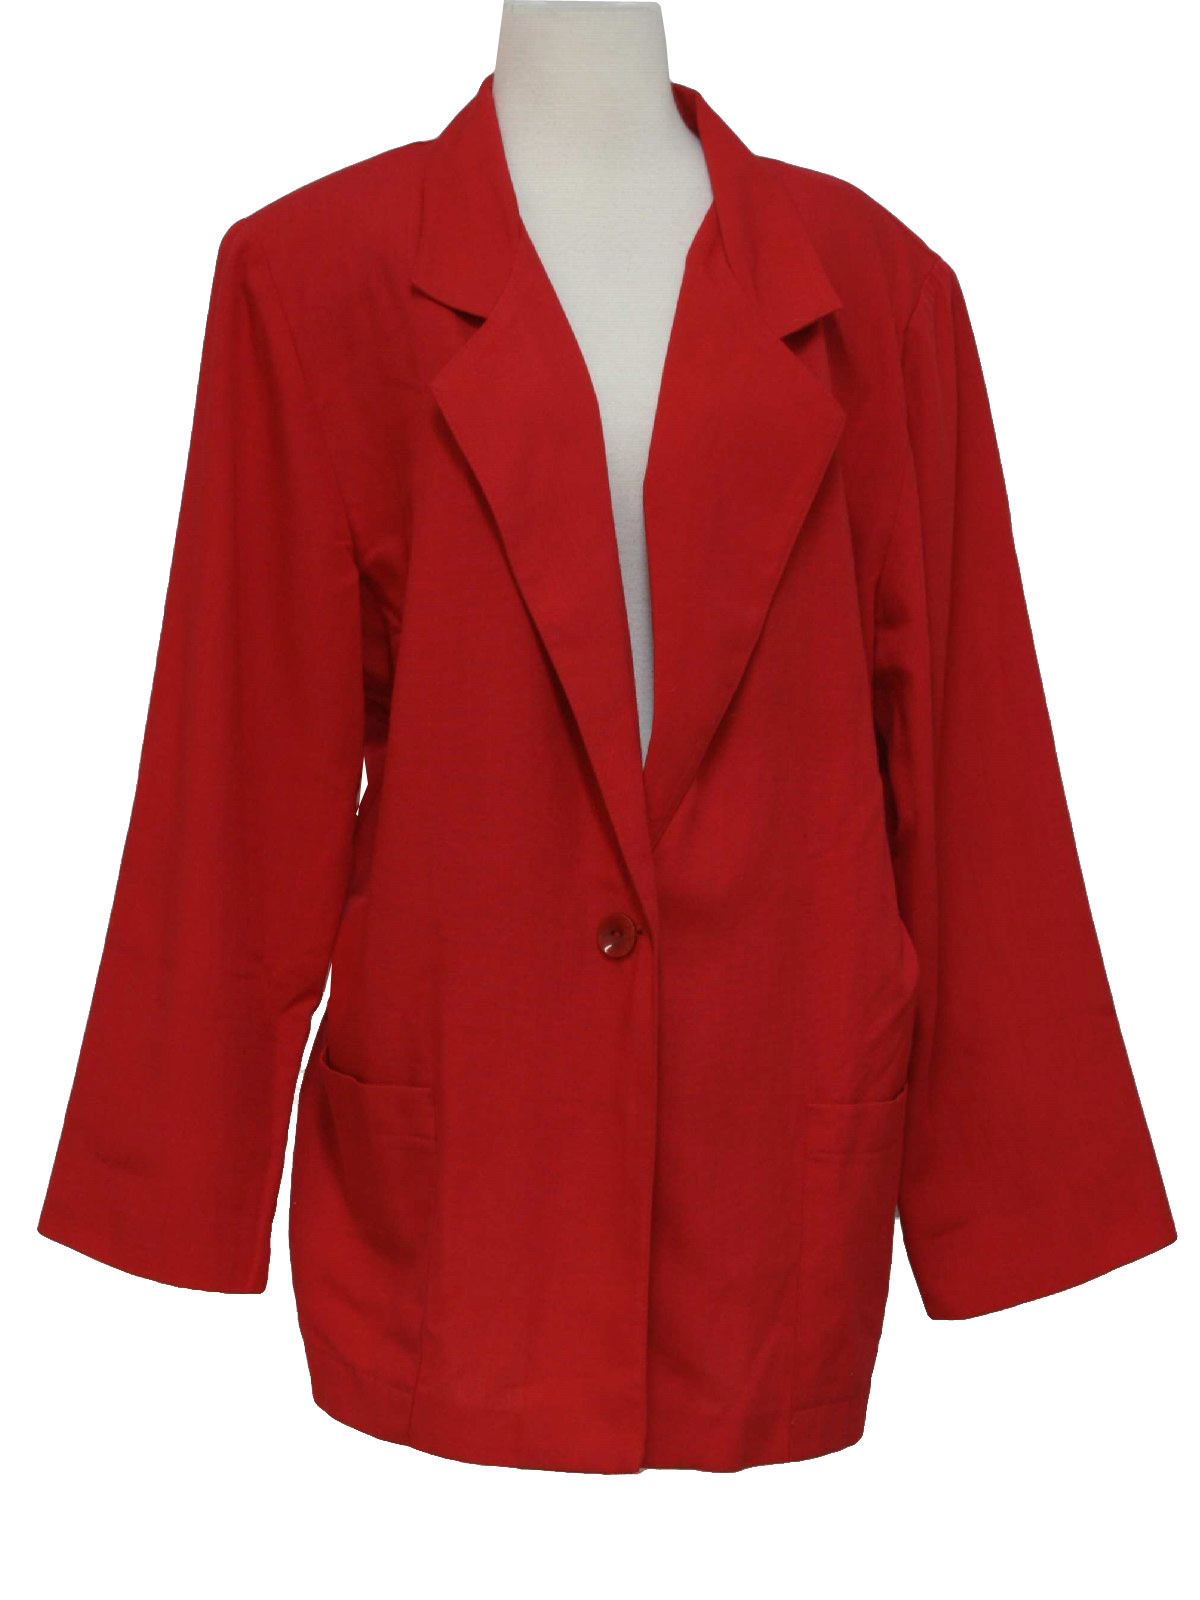 80s Jacket (Sag Harbor): 80s -Sag Harbor- Womens red rayon and ...